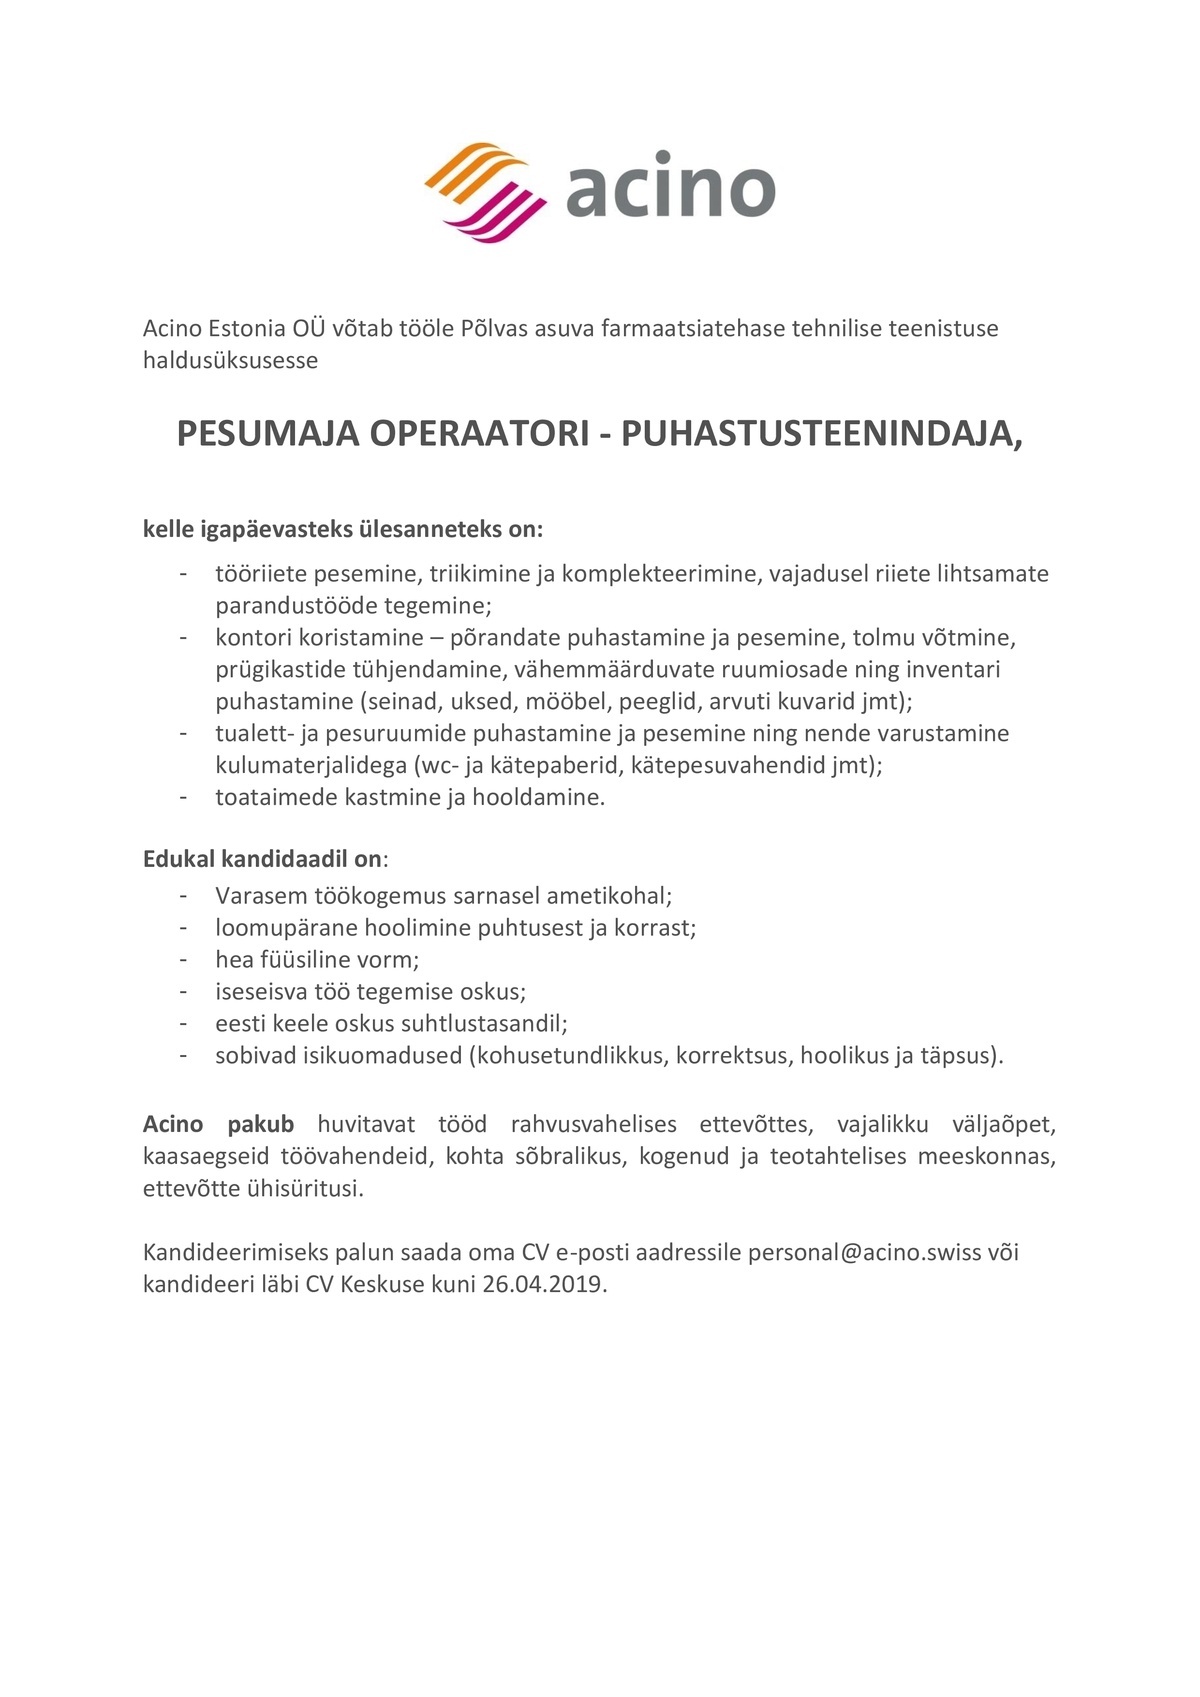 Acino Estonia OÜ Pesumaja operaator - puhastusteenindaja